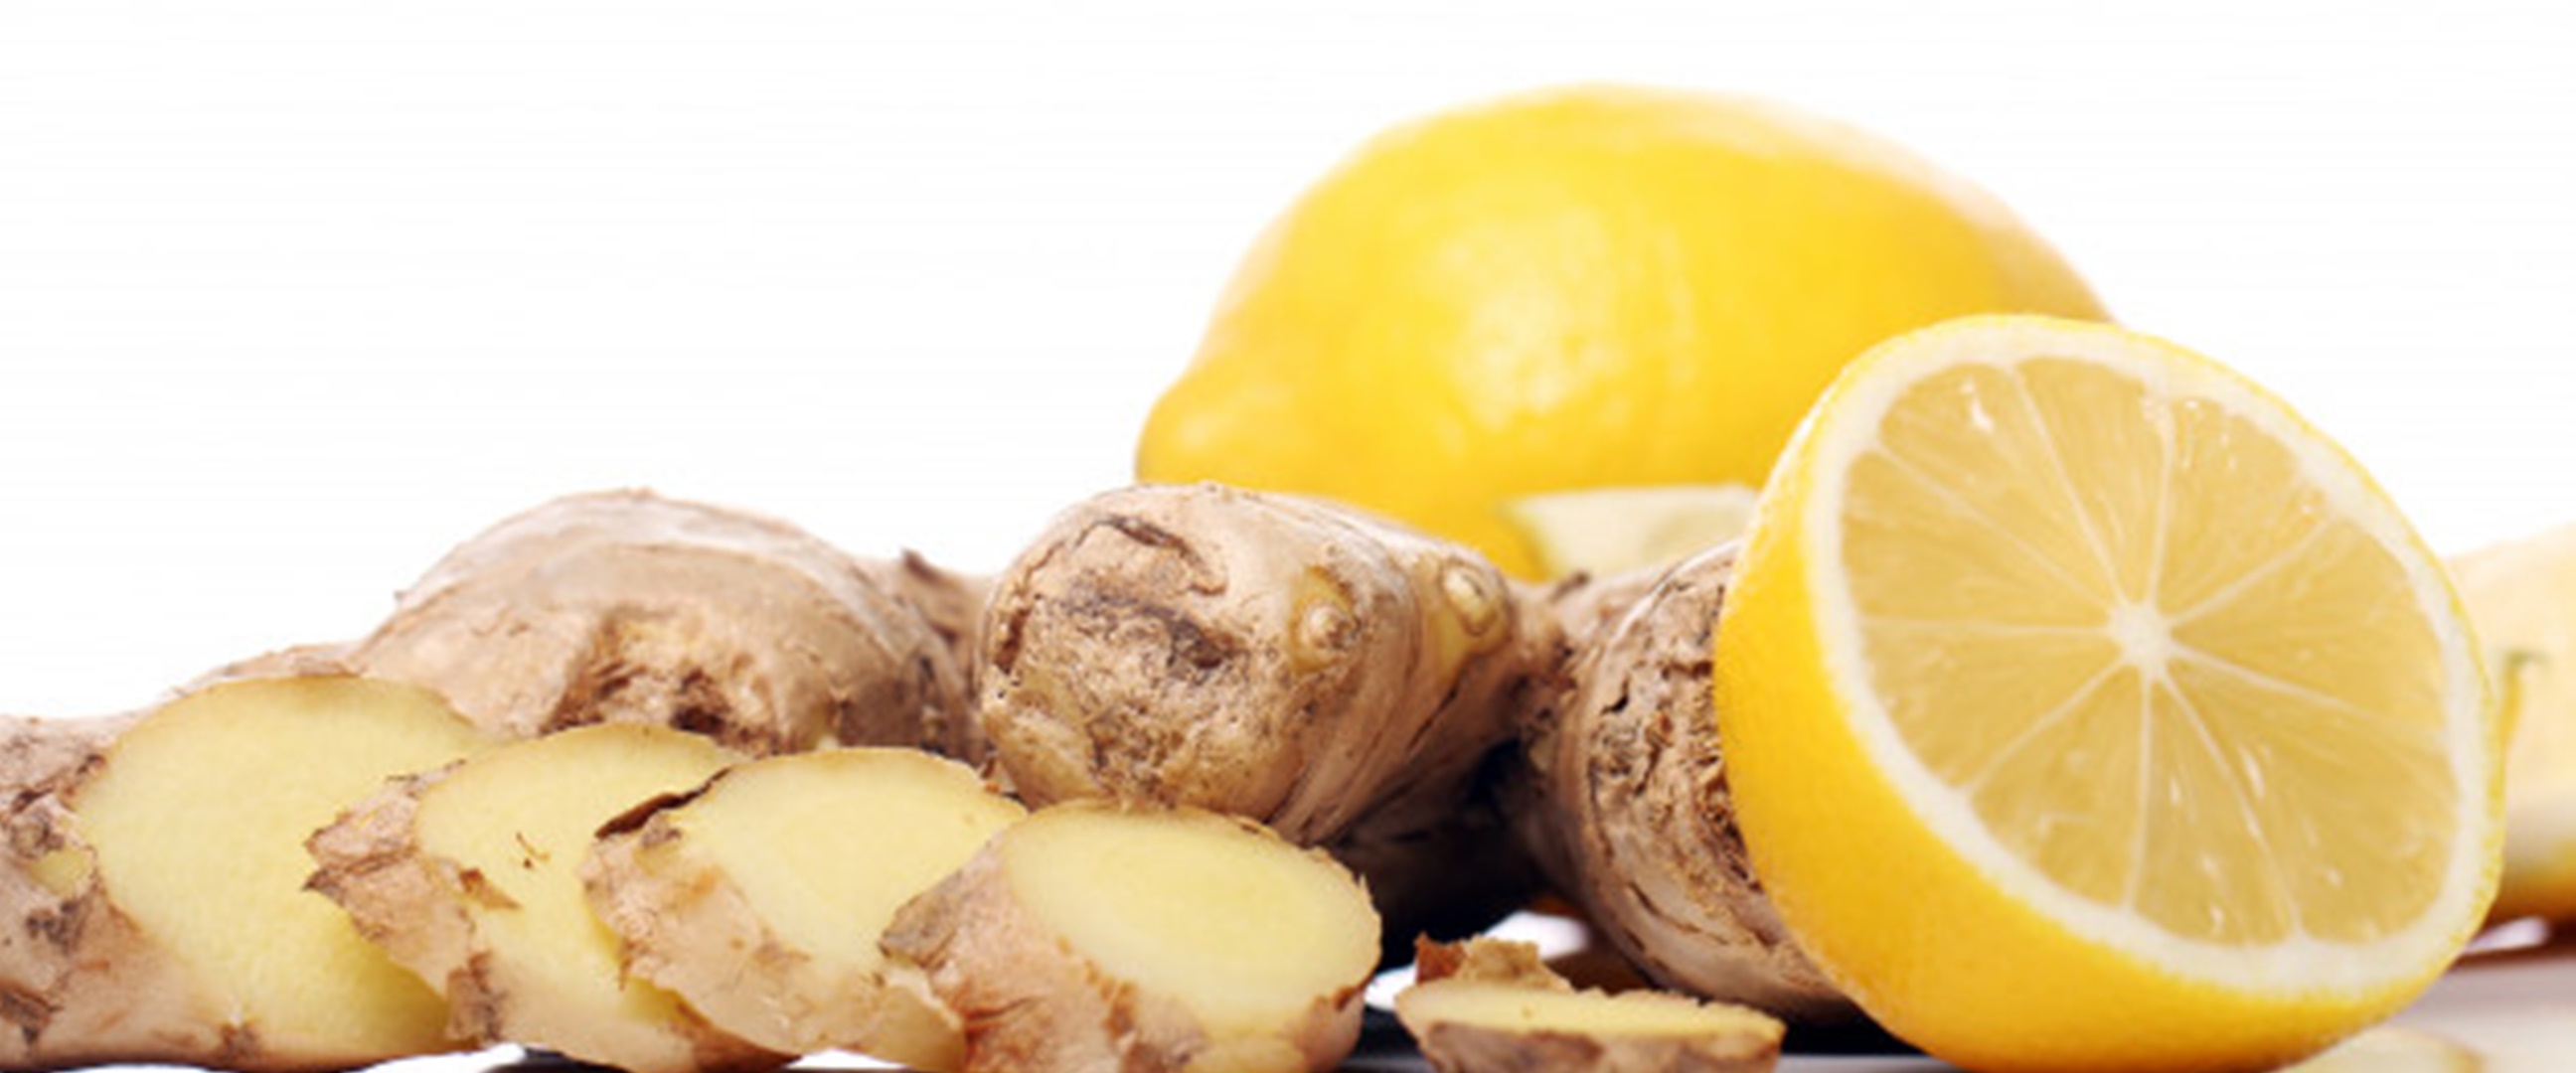 6 Manfaat kombinasi jahe & lemon untuk kesehatan, cegah batu ginjal